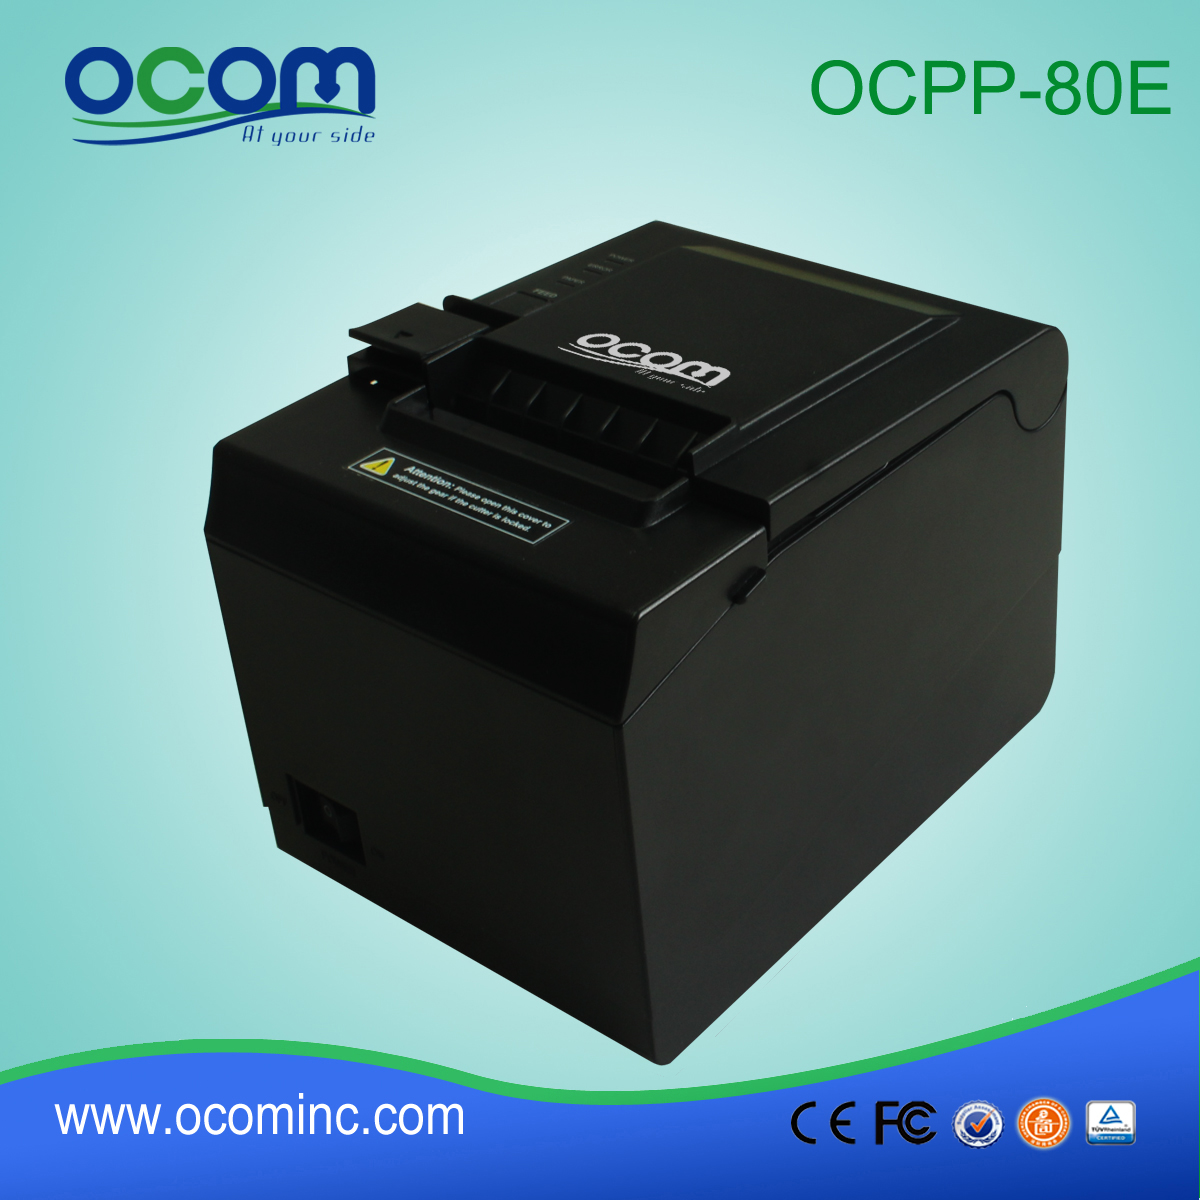 OCPP-80e 3 pouces POS ticket facture directe imprimante thermique pour système POS